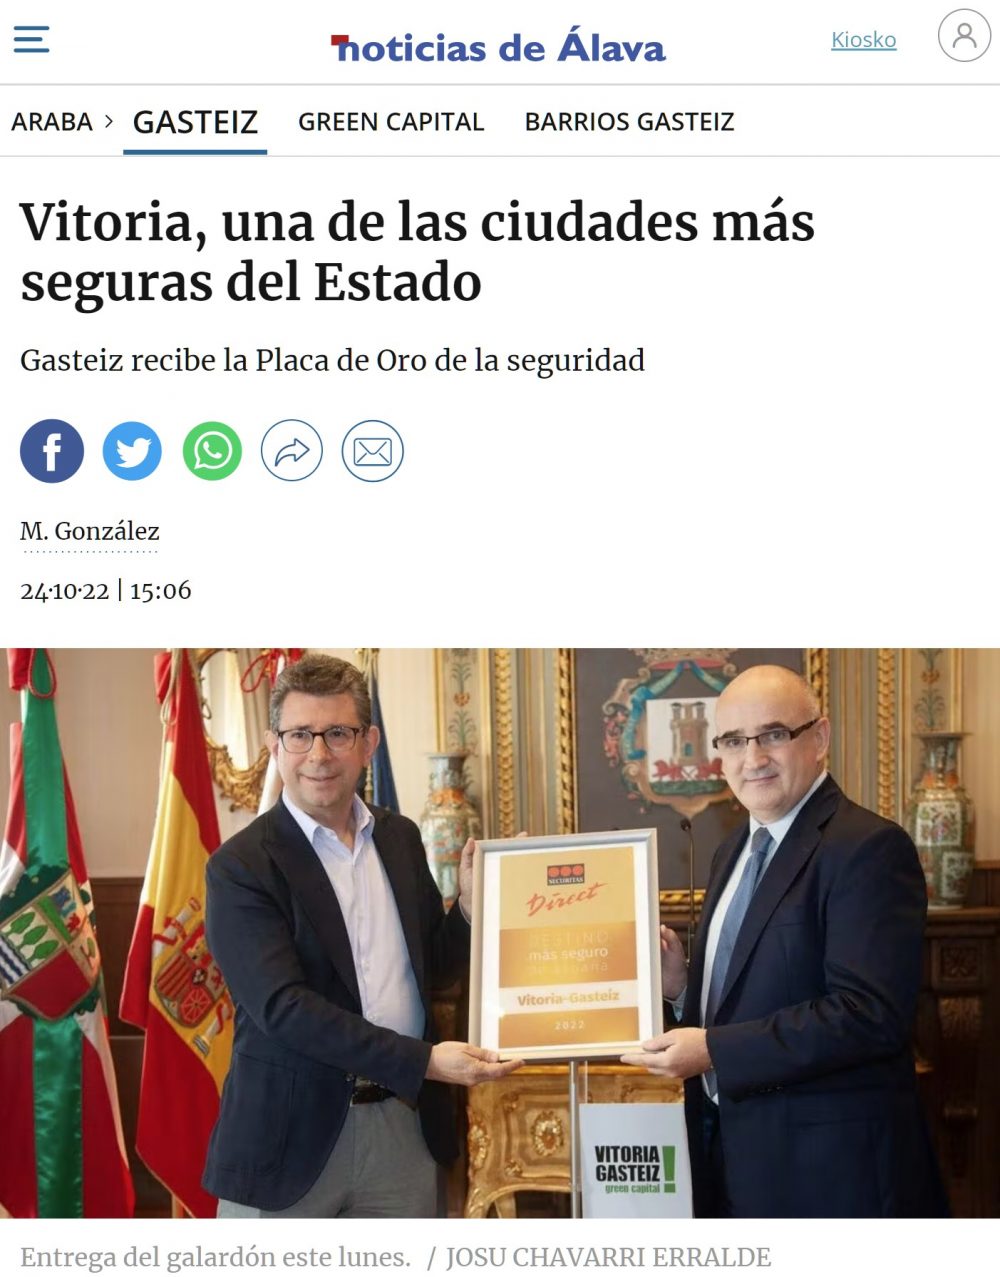 ¿Sabías que algunos medios vascos aún utilizan la palabra "Estado" en lugar de "España" o "País"?